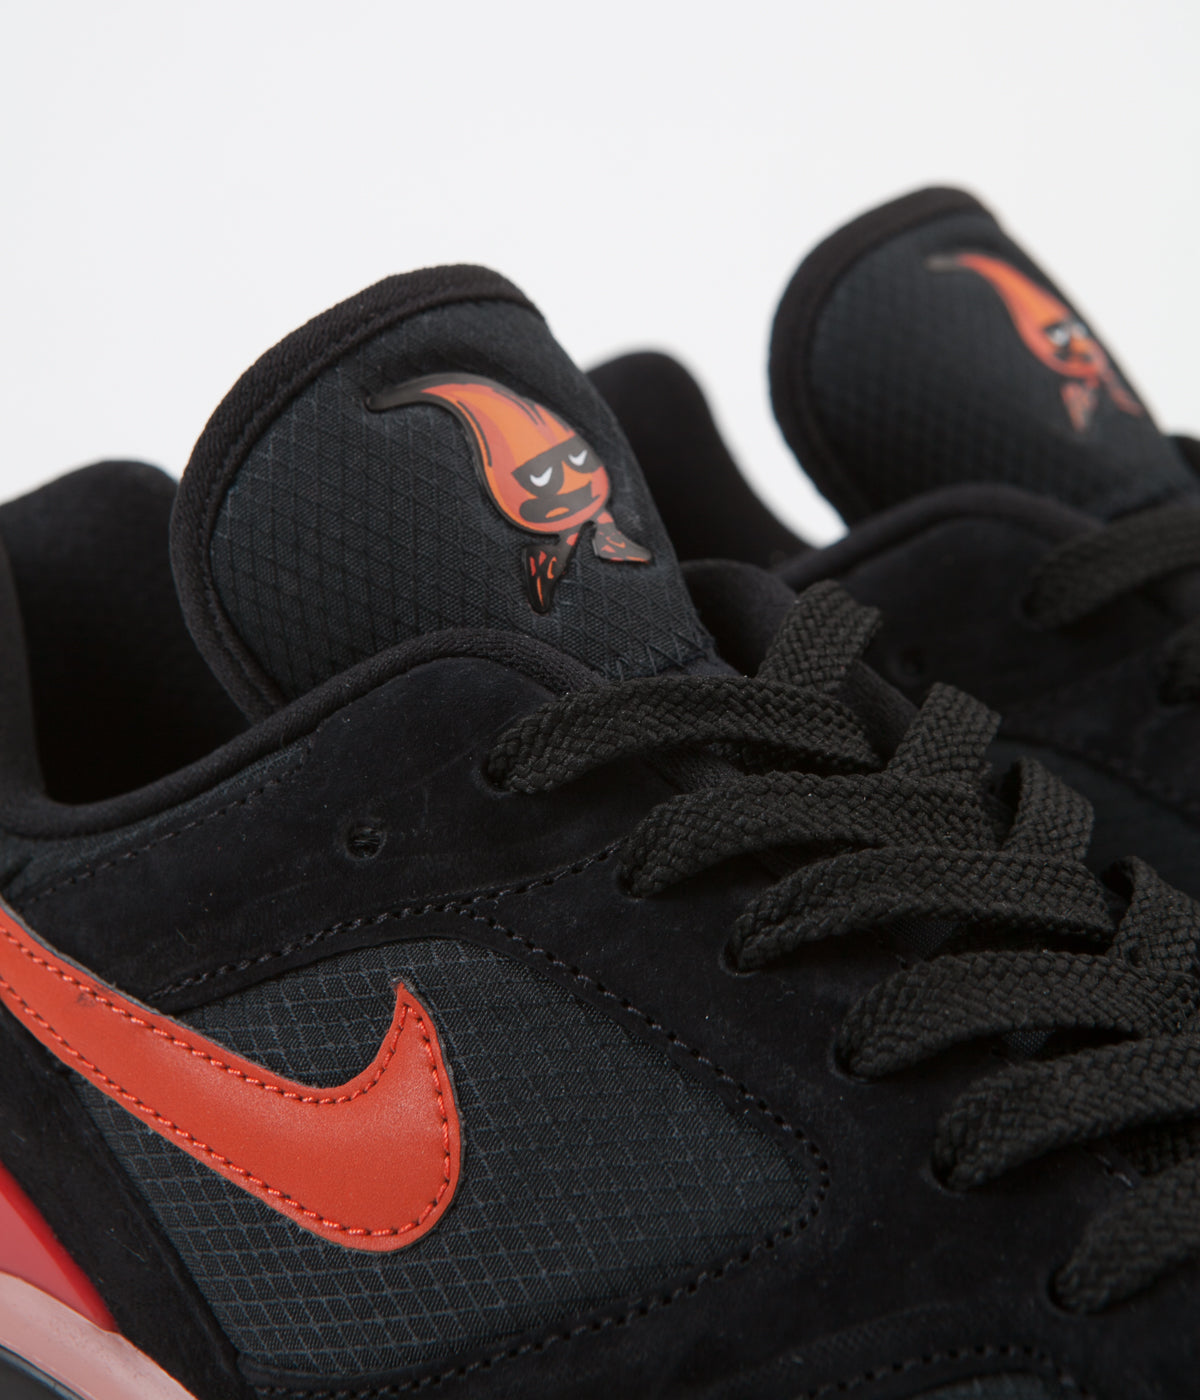 Arrugas Cerco Optimista Nike Air Max 180 Shoes - Black / Team Orange - University Red | Always in  Colour